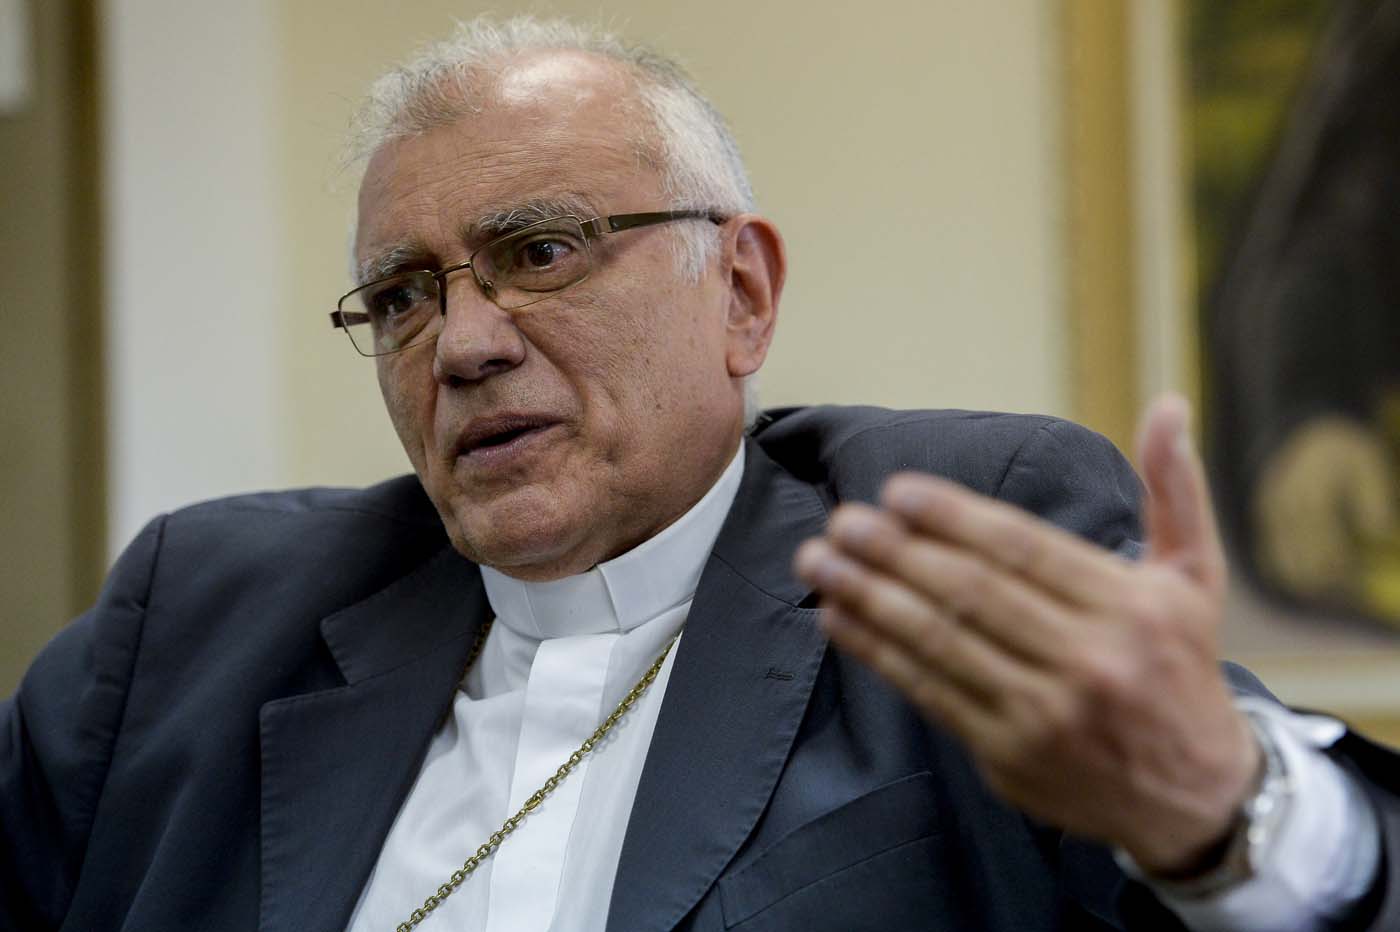 Cardenal Porras denunció que estafadores usaron su nombre para pedir dinero en redes